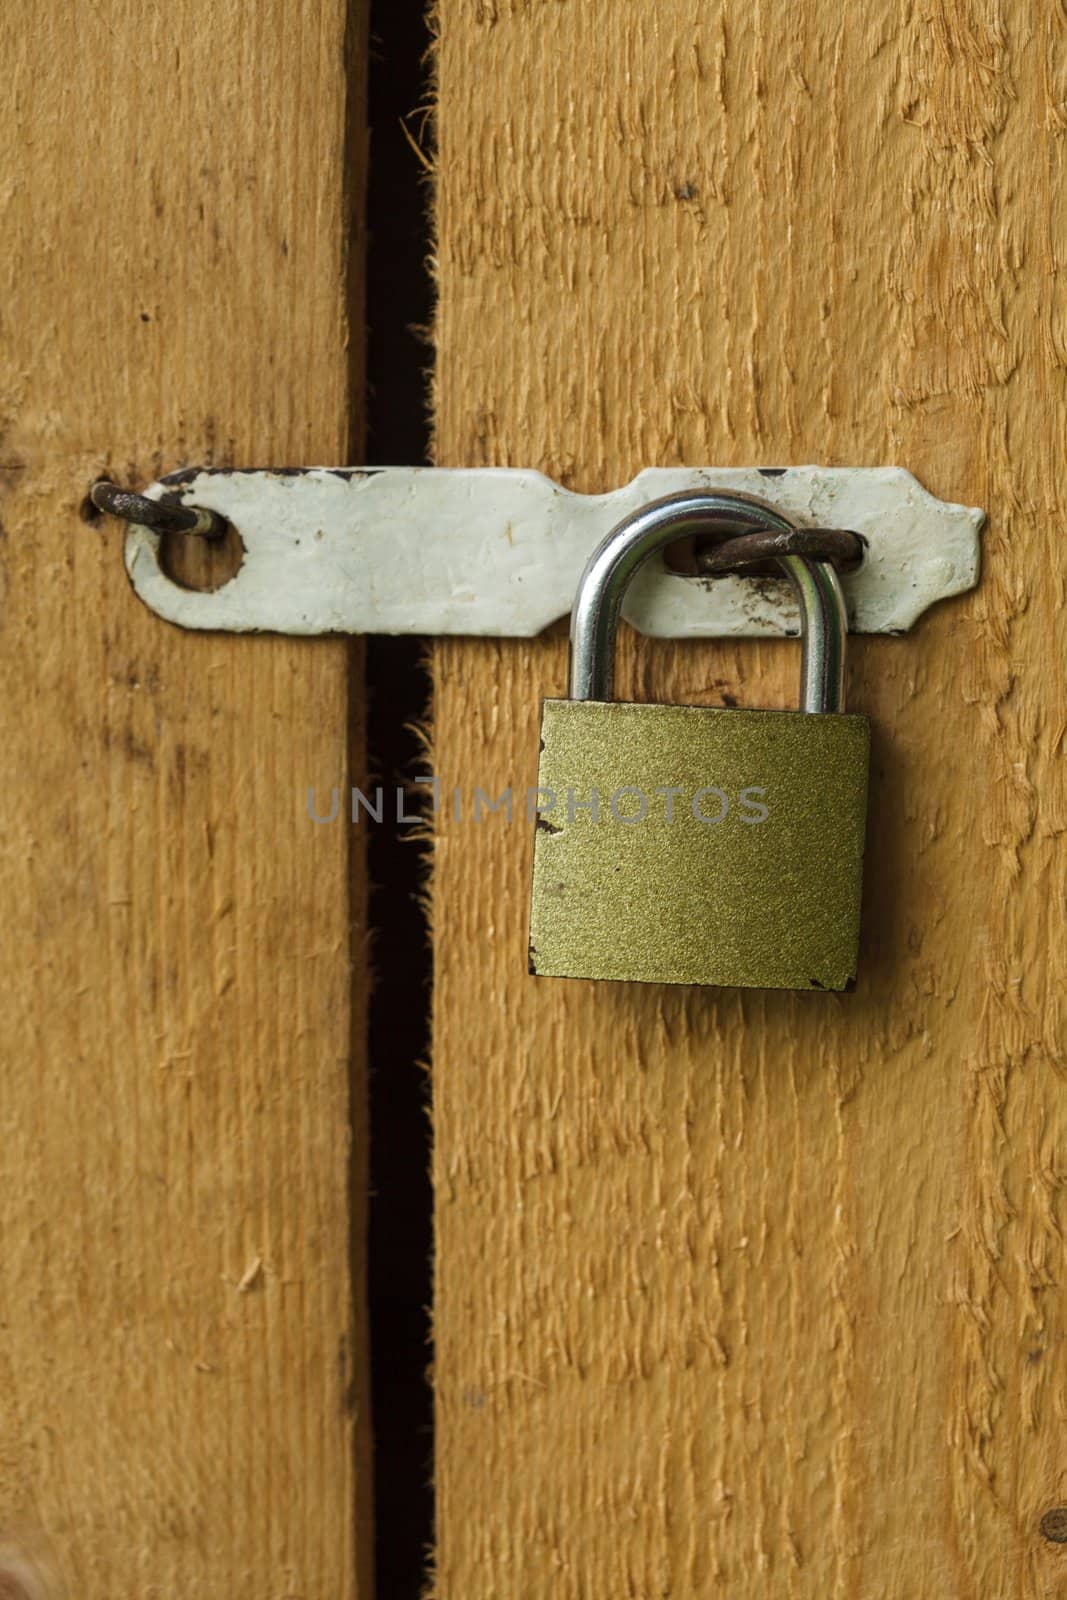 Metal lock on the wooden door closeup